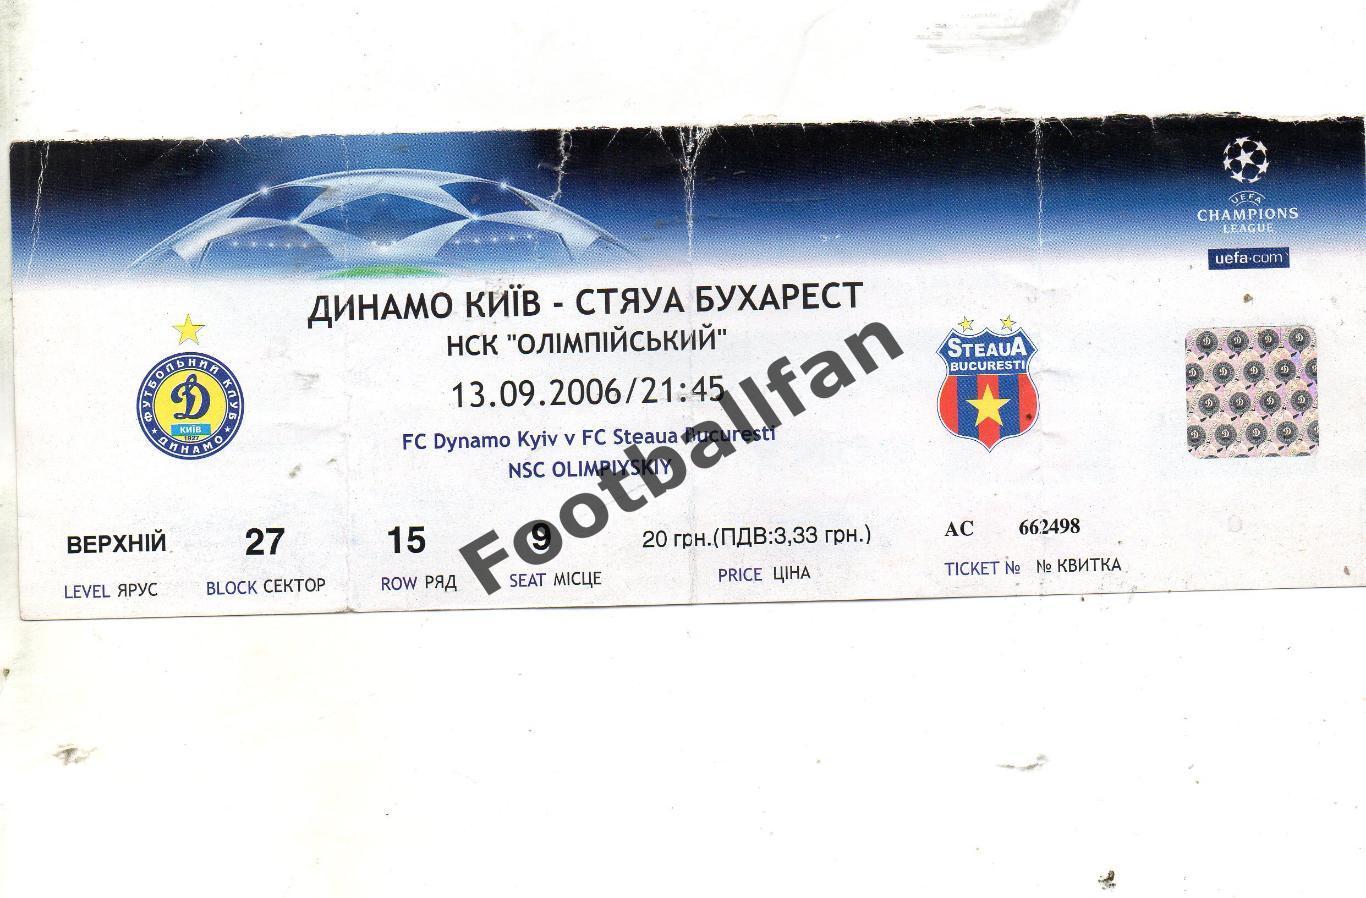 Динамо Киев , Украина - Стяуа Бухарест , Румыния 13.09.2006